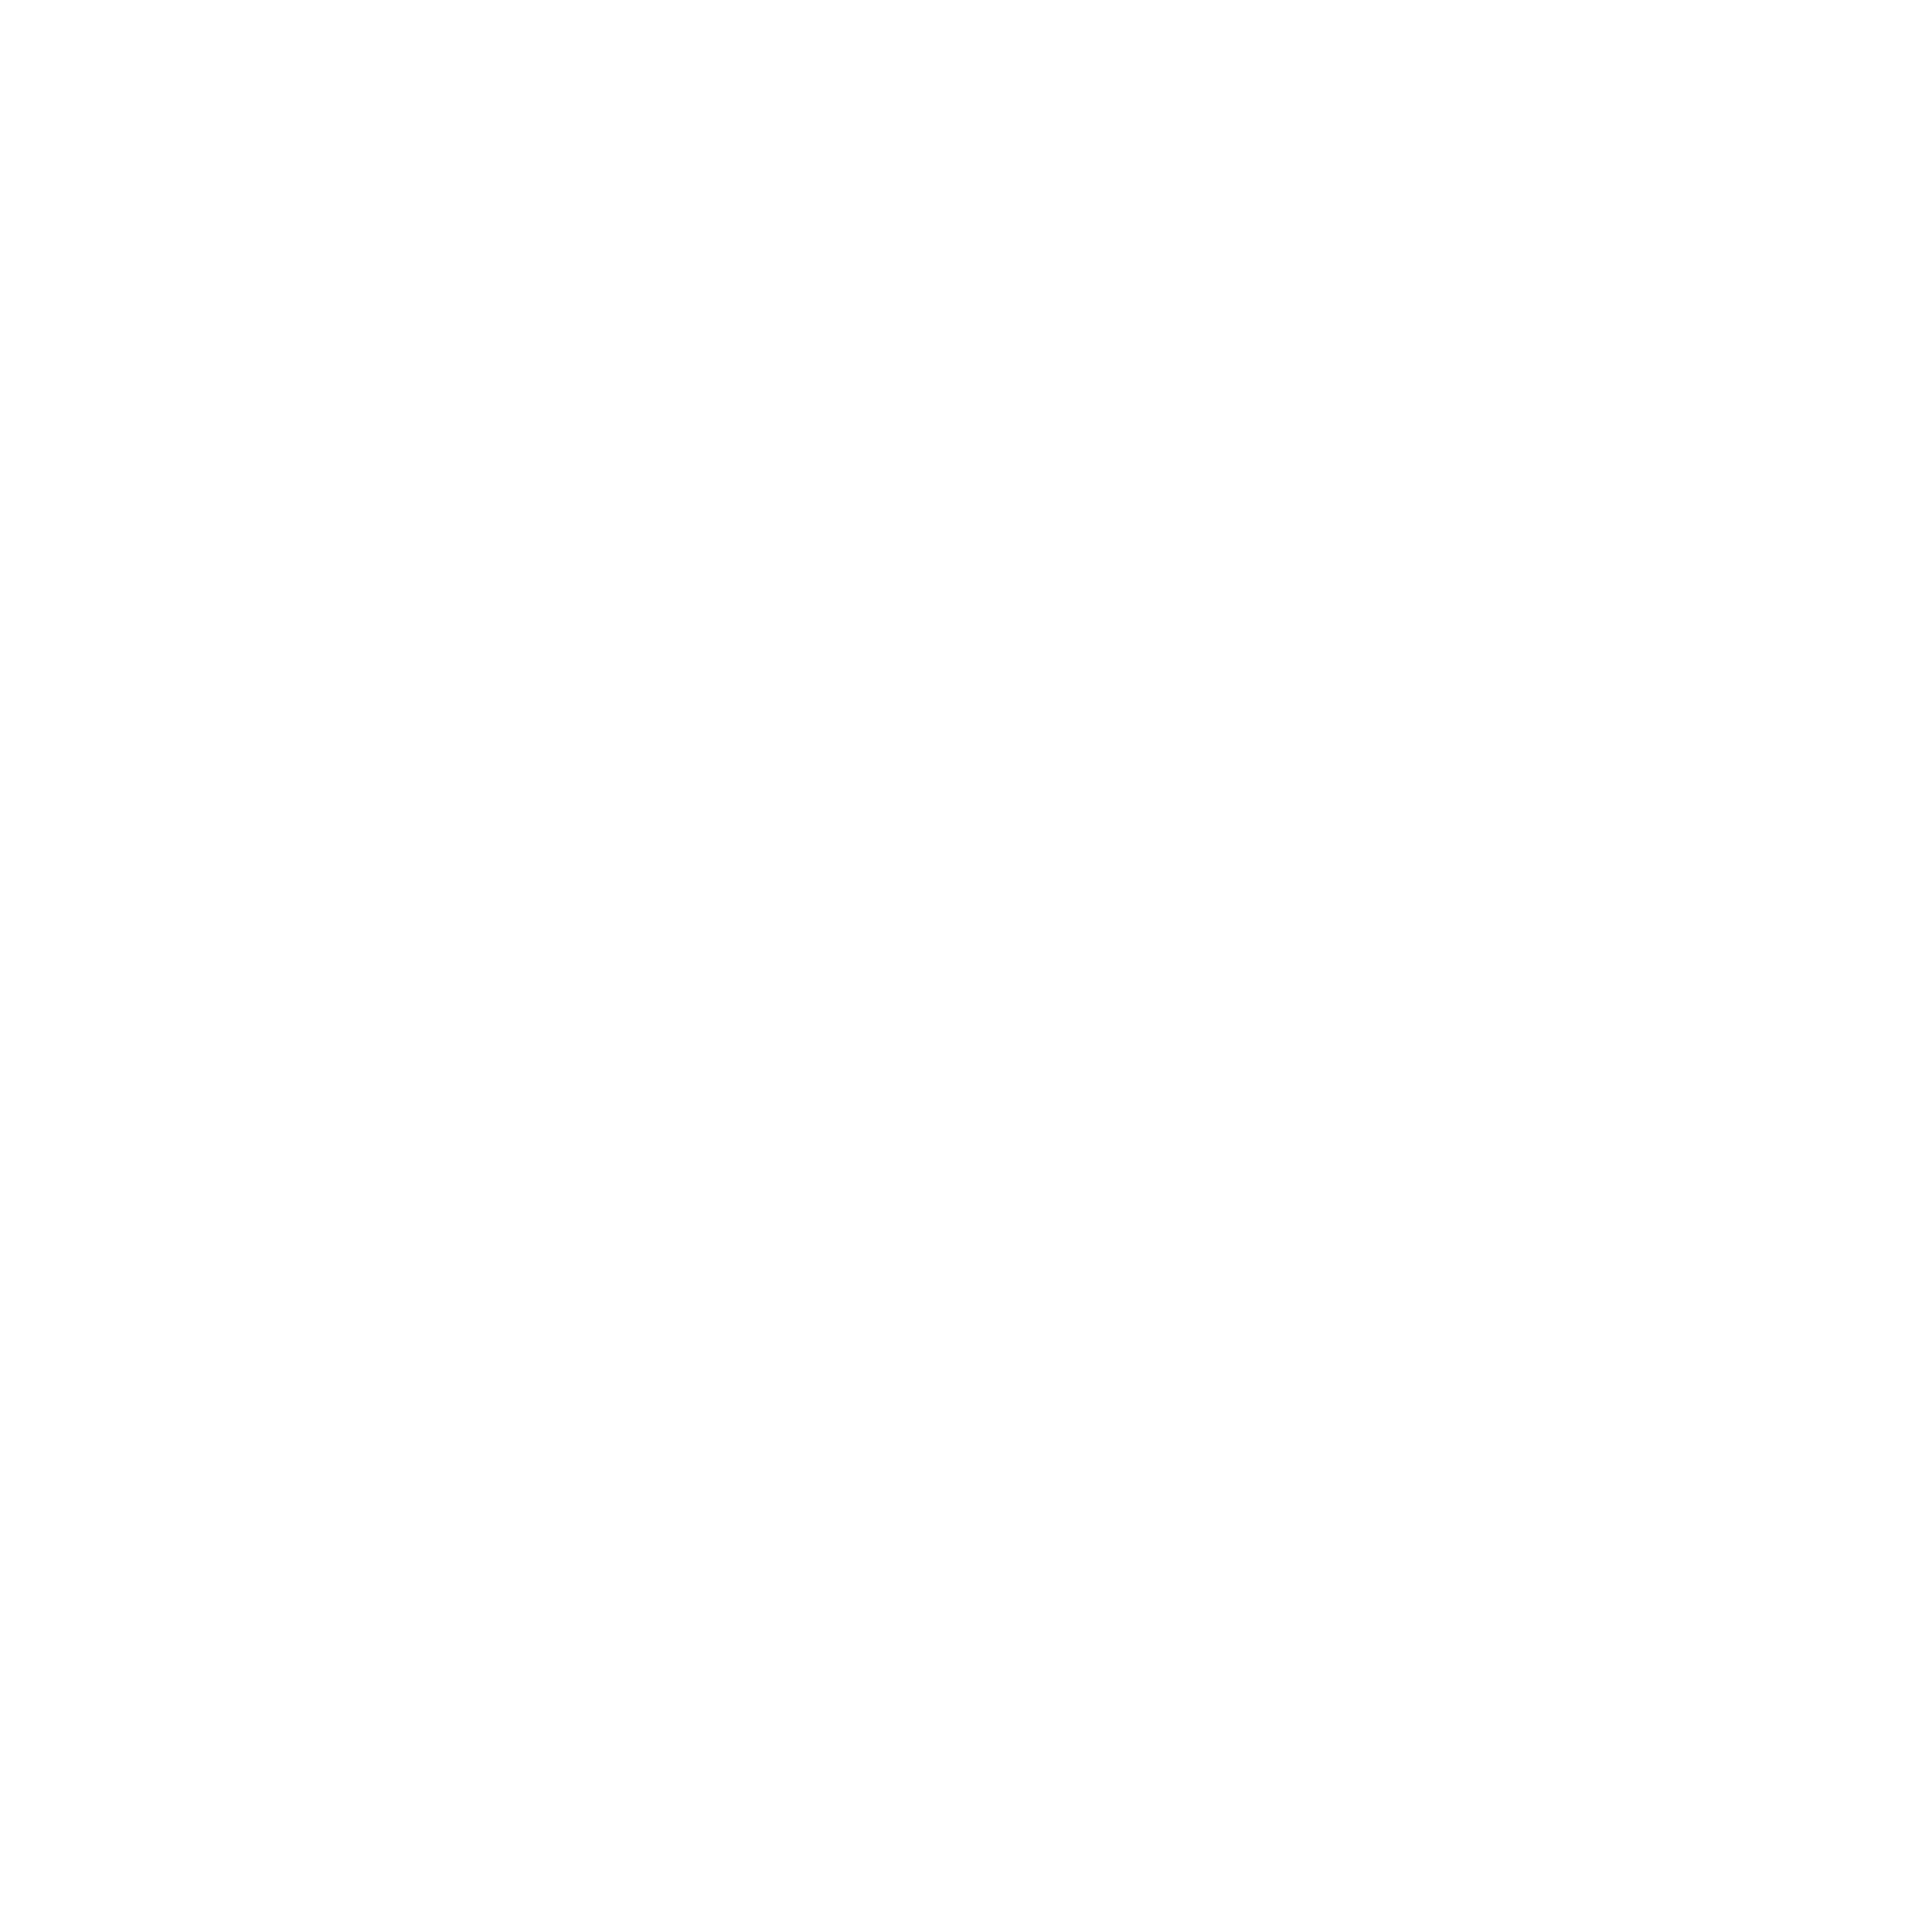 <strong>Hotline d'urgence 24h/24 et 7j/7 + service de mobilité ACL</strong><br>Grâce à notre hotline d'urgence 24h/24 et 7j/7 et à notre service de mobilité 24h/24, tu es toujours en route sans souci et en toute tranquillité.